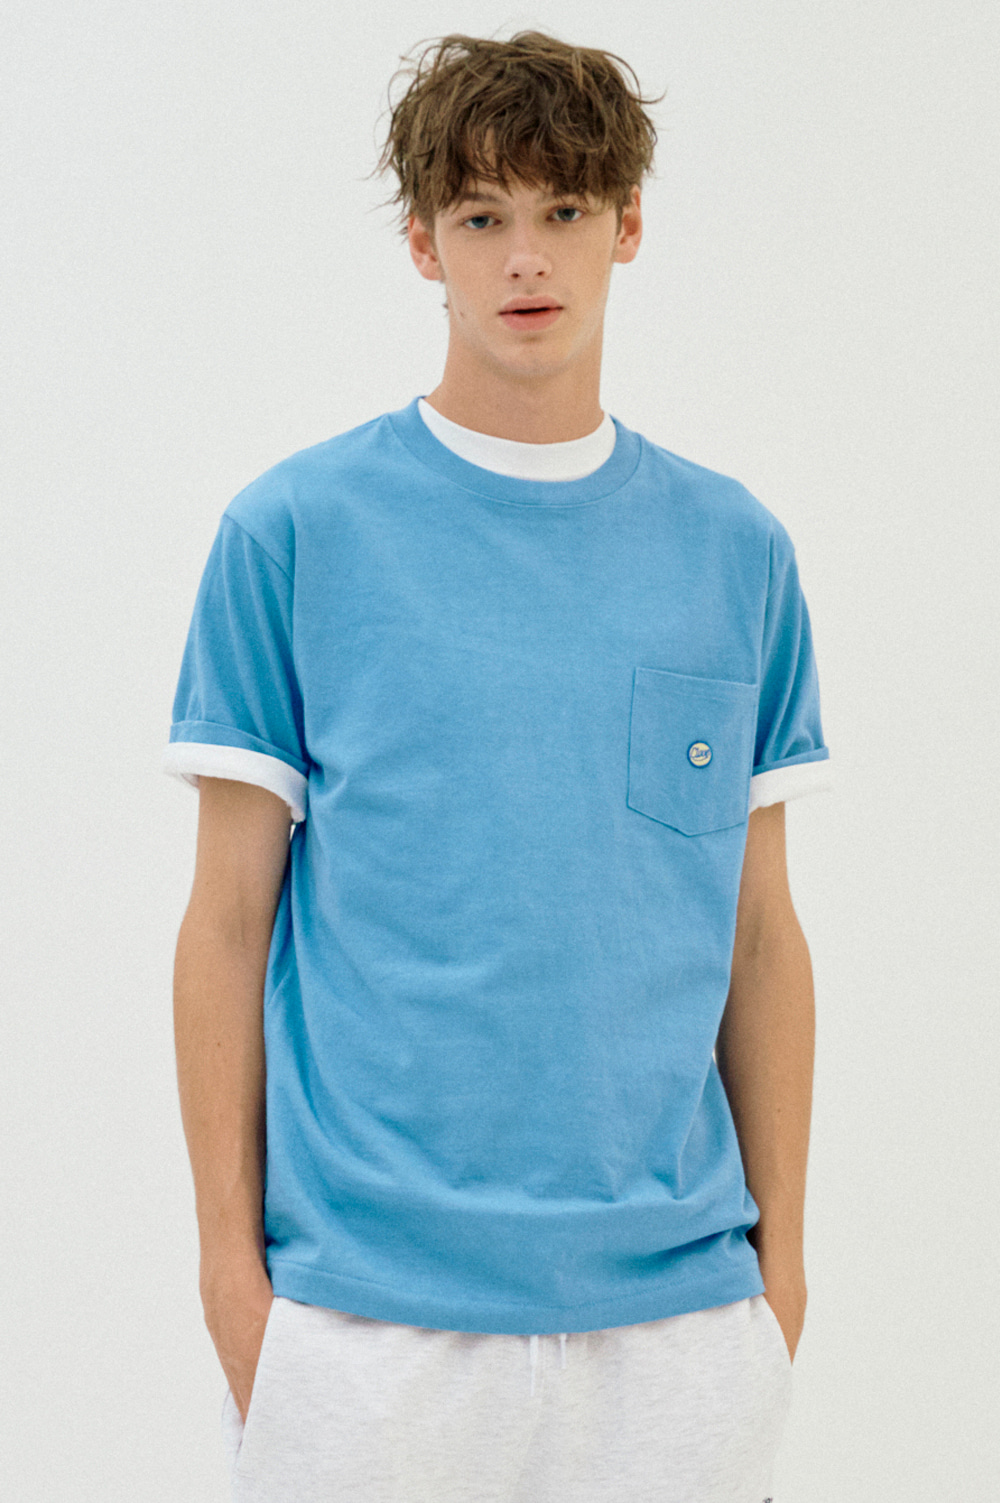 clove - Pocket T-Shirt_Men (Blue)